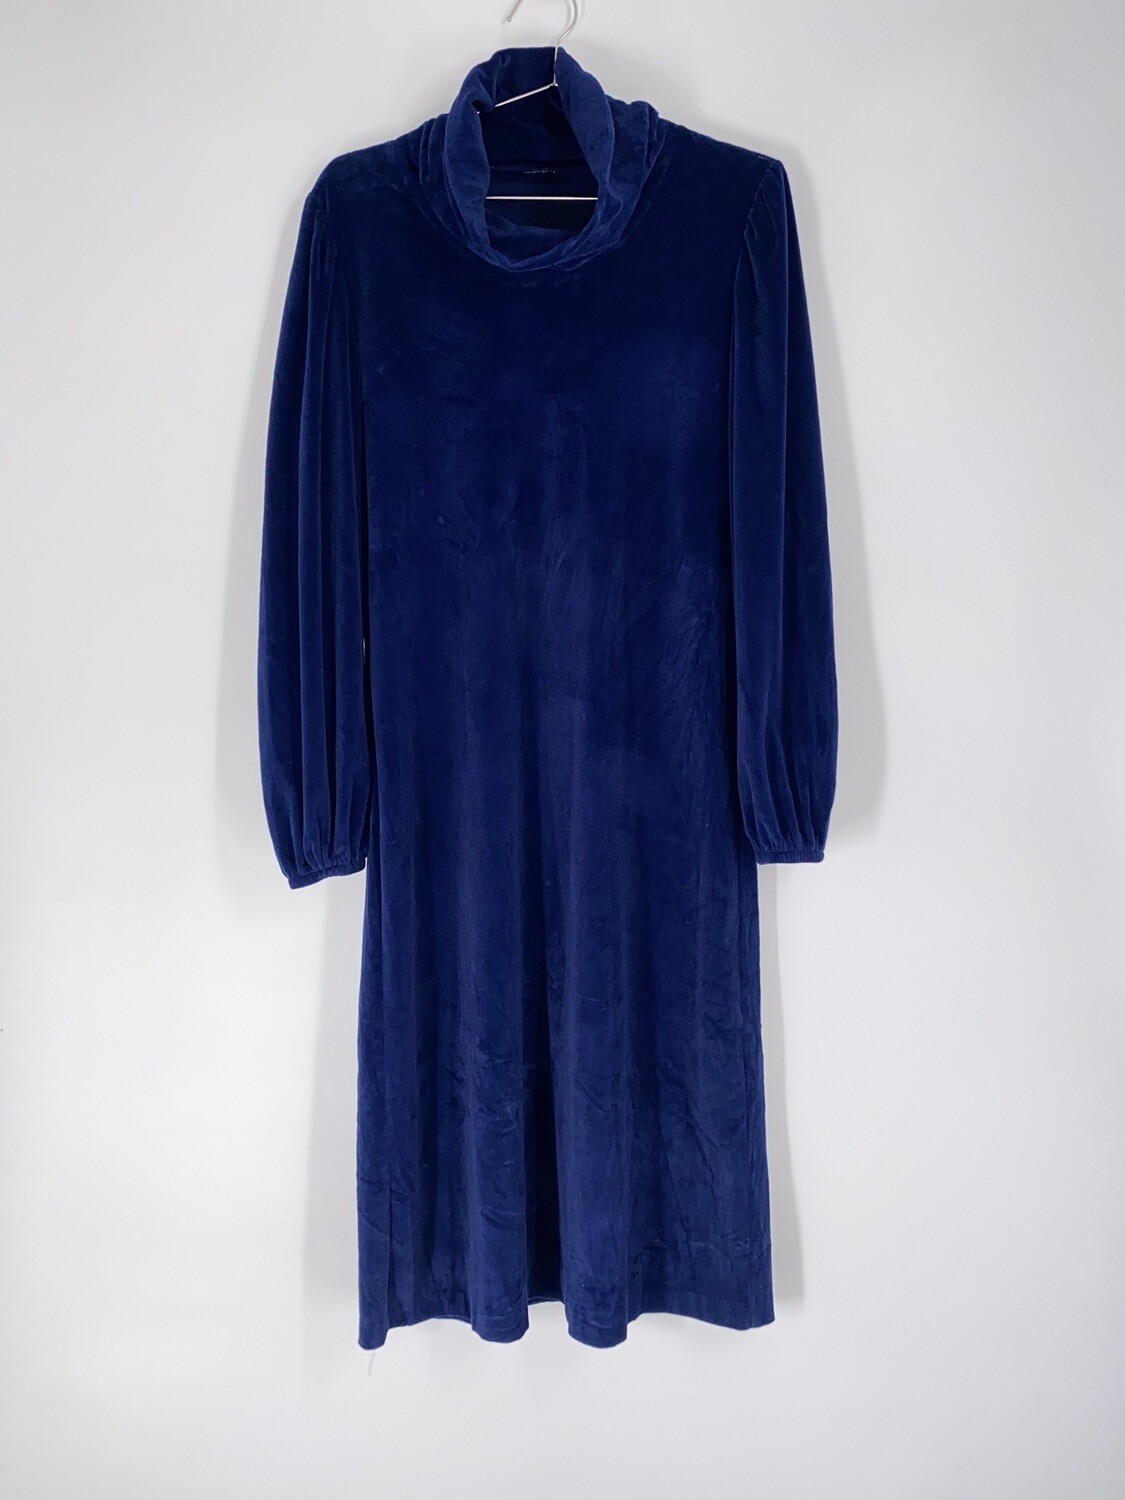 Blue Velvet Turtleneck Dress Size M